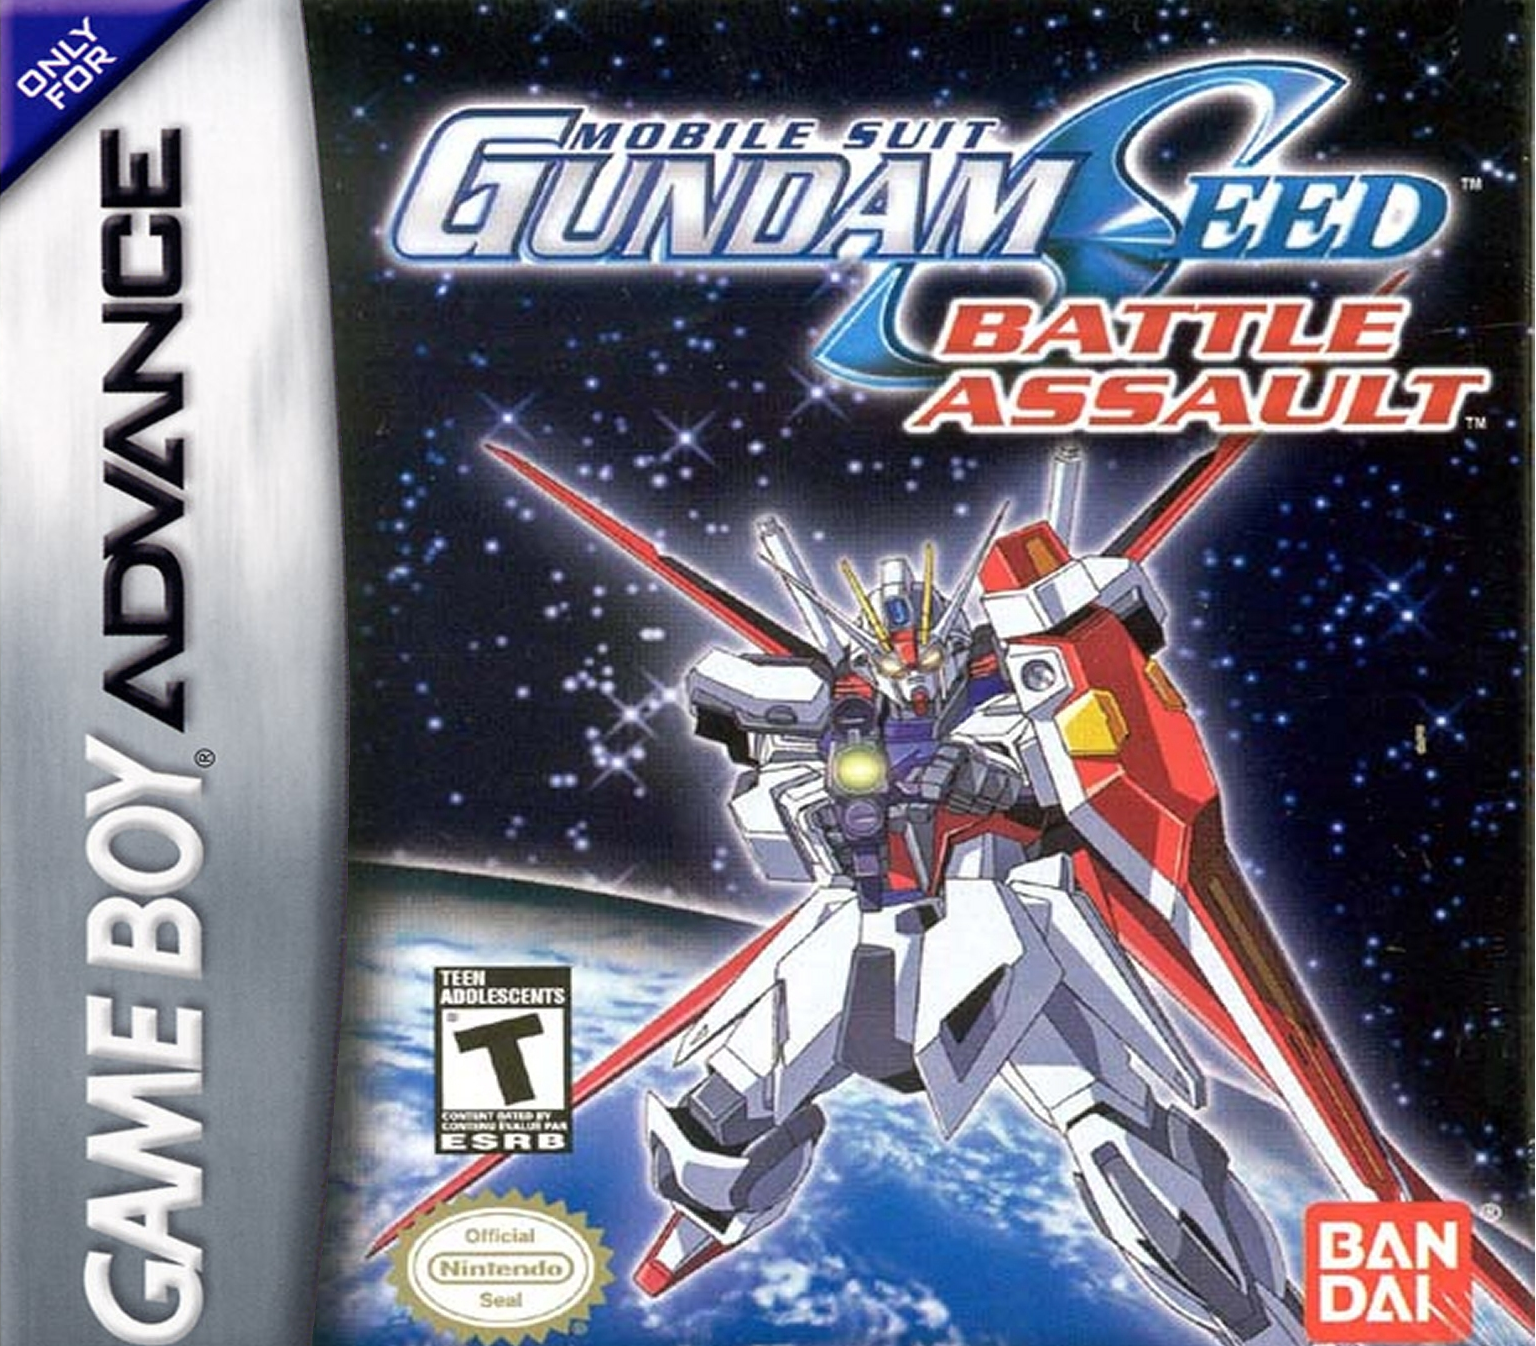 Mobile Suit Gundam SEED: Battle Assault | The Gundam Wiki | Fandom